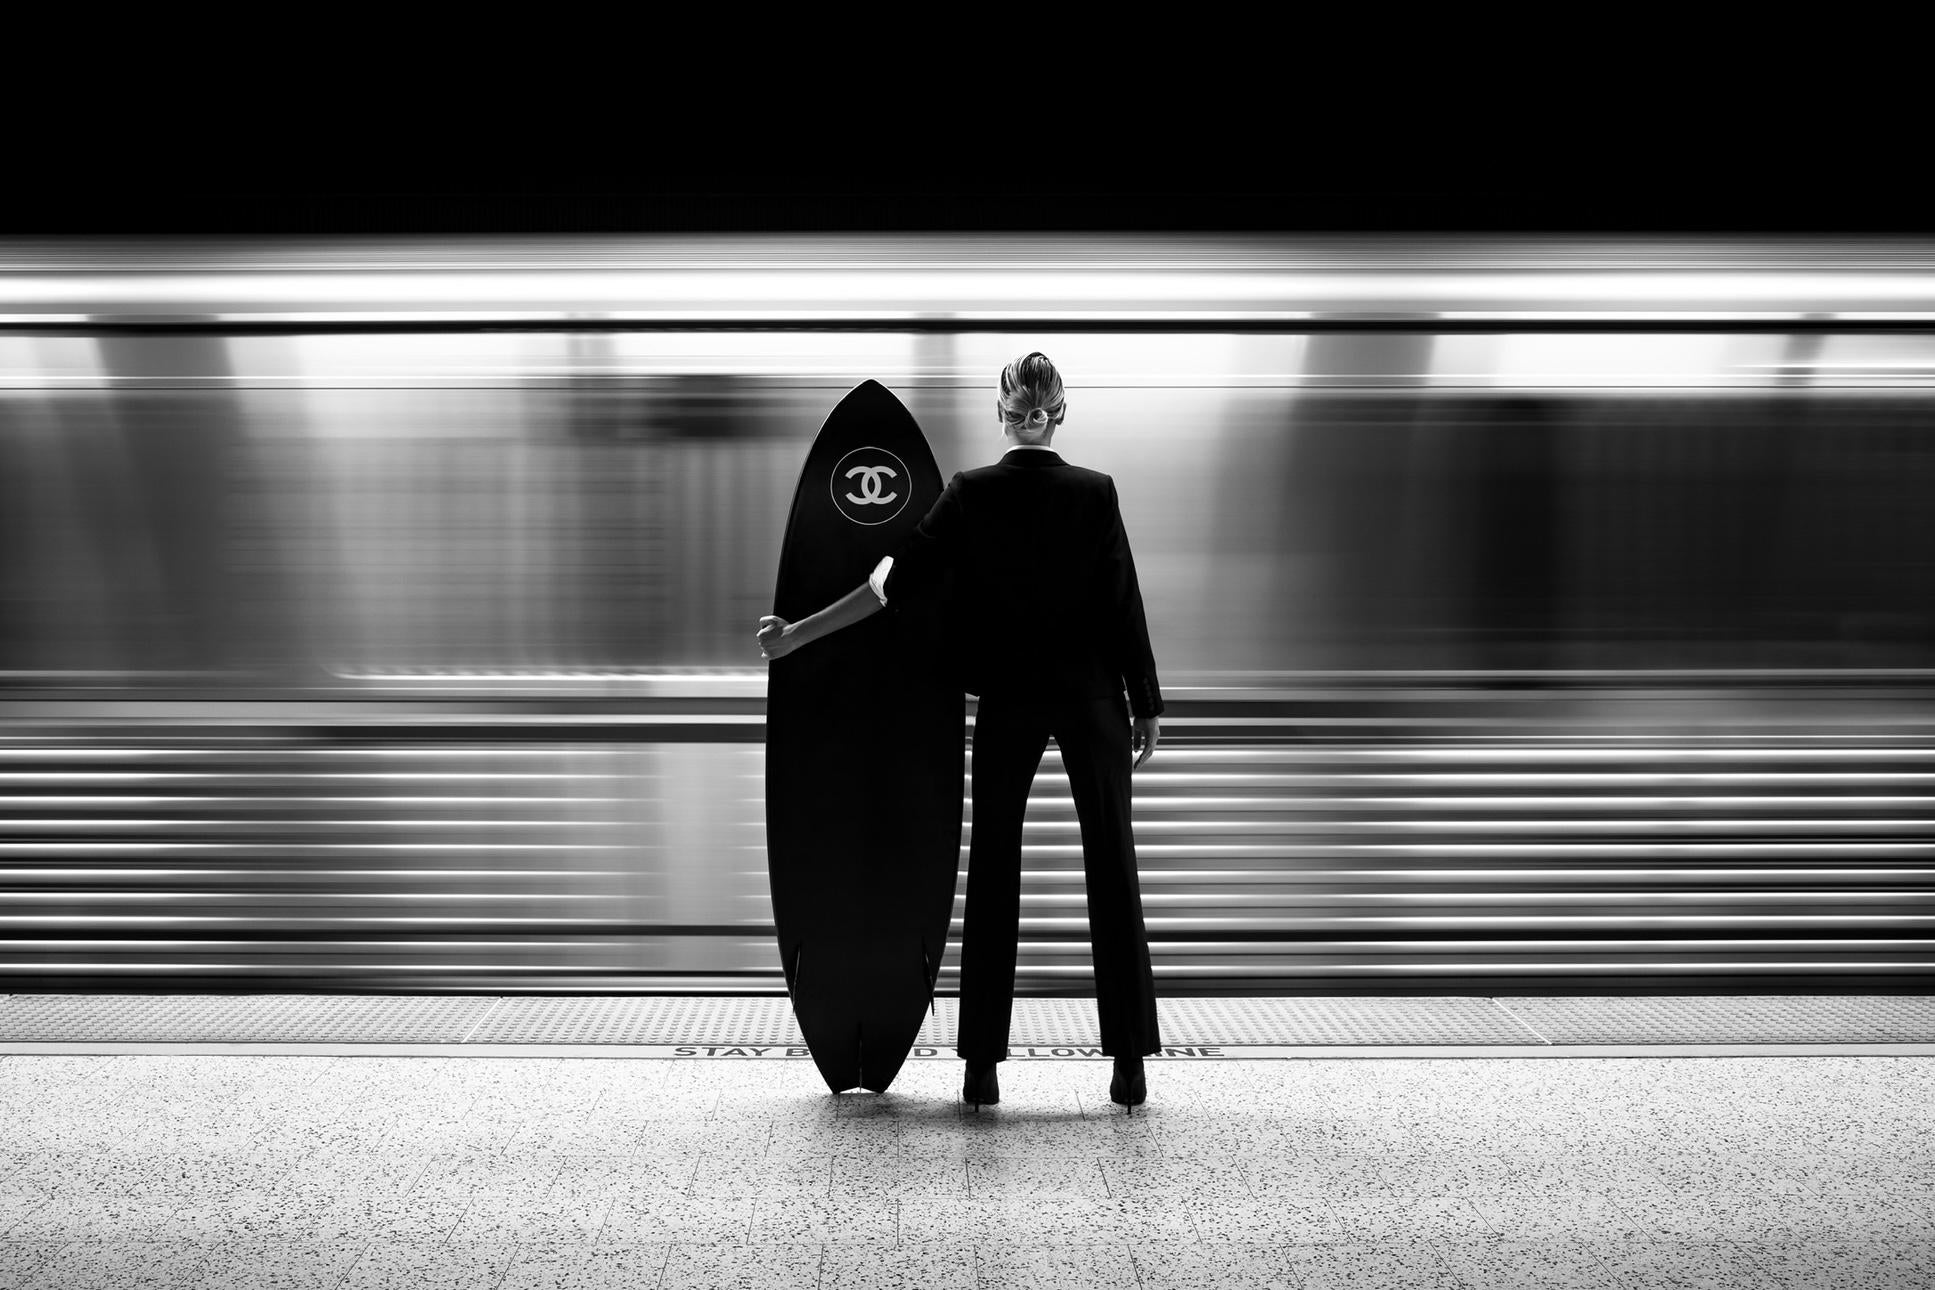 "Subway Surfer" Photographie 16" x 42" pouces Edition de 15 par Brendan North